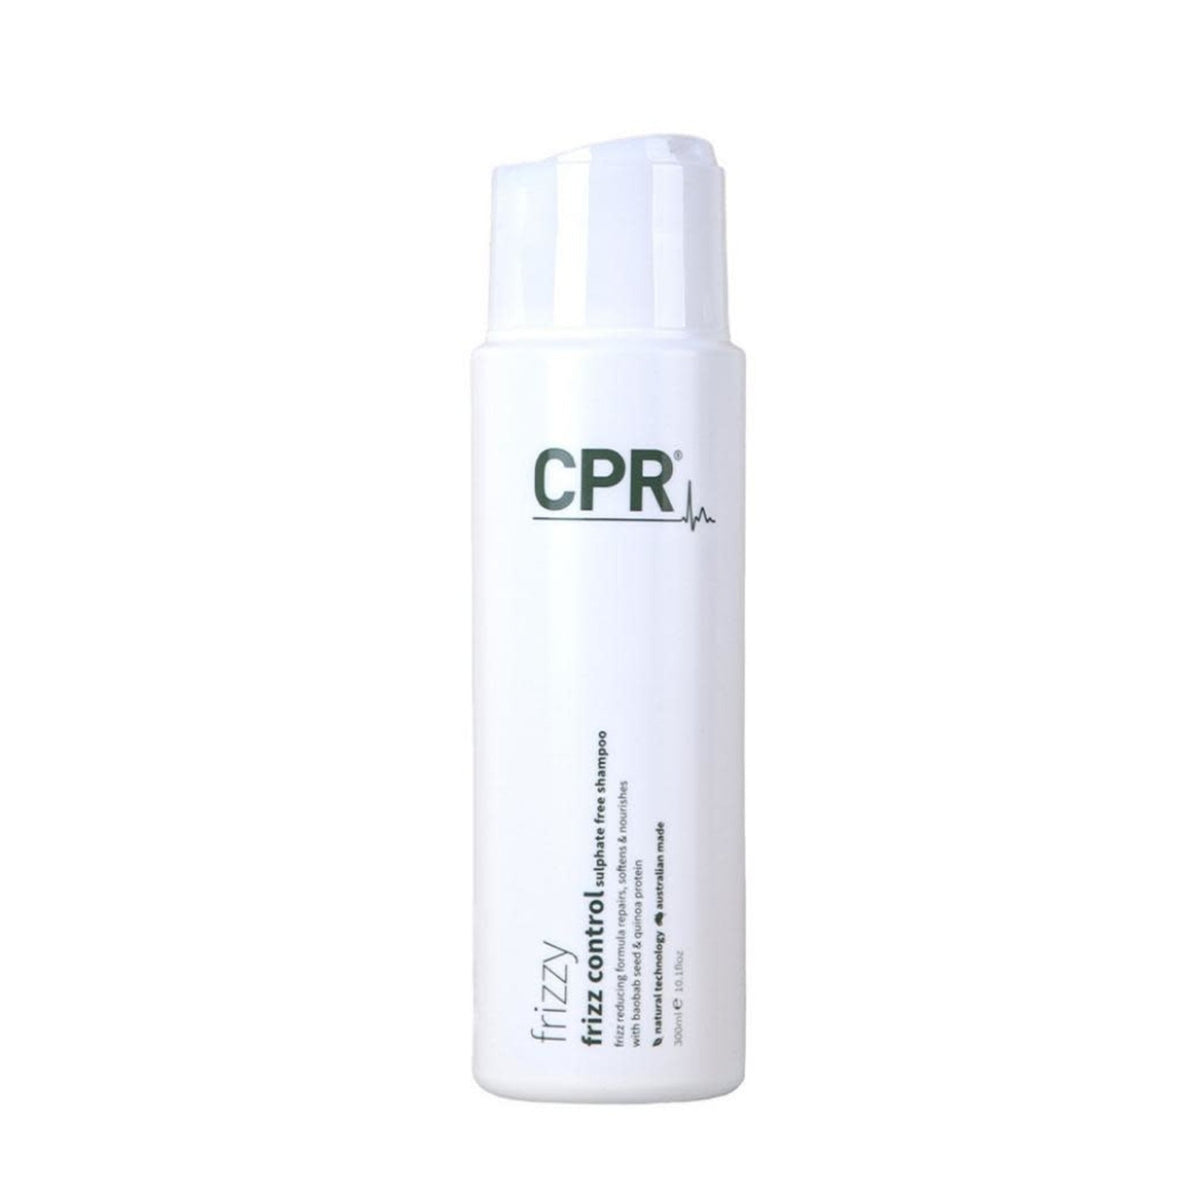 Vitafive CPR Frizz Control Shampoo - Haircare Superstore